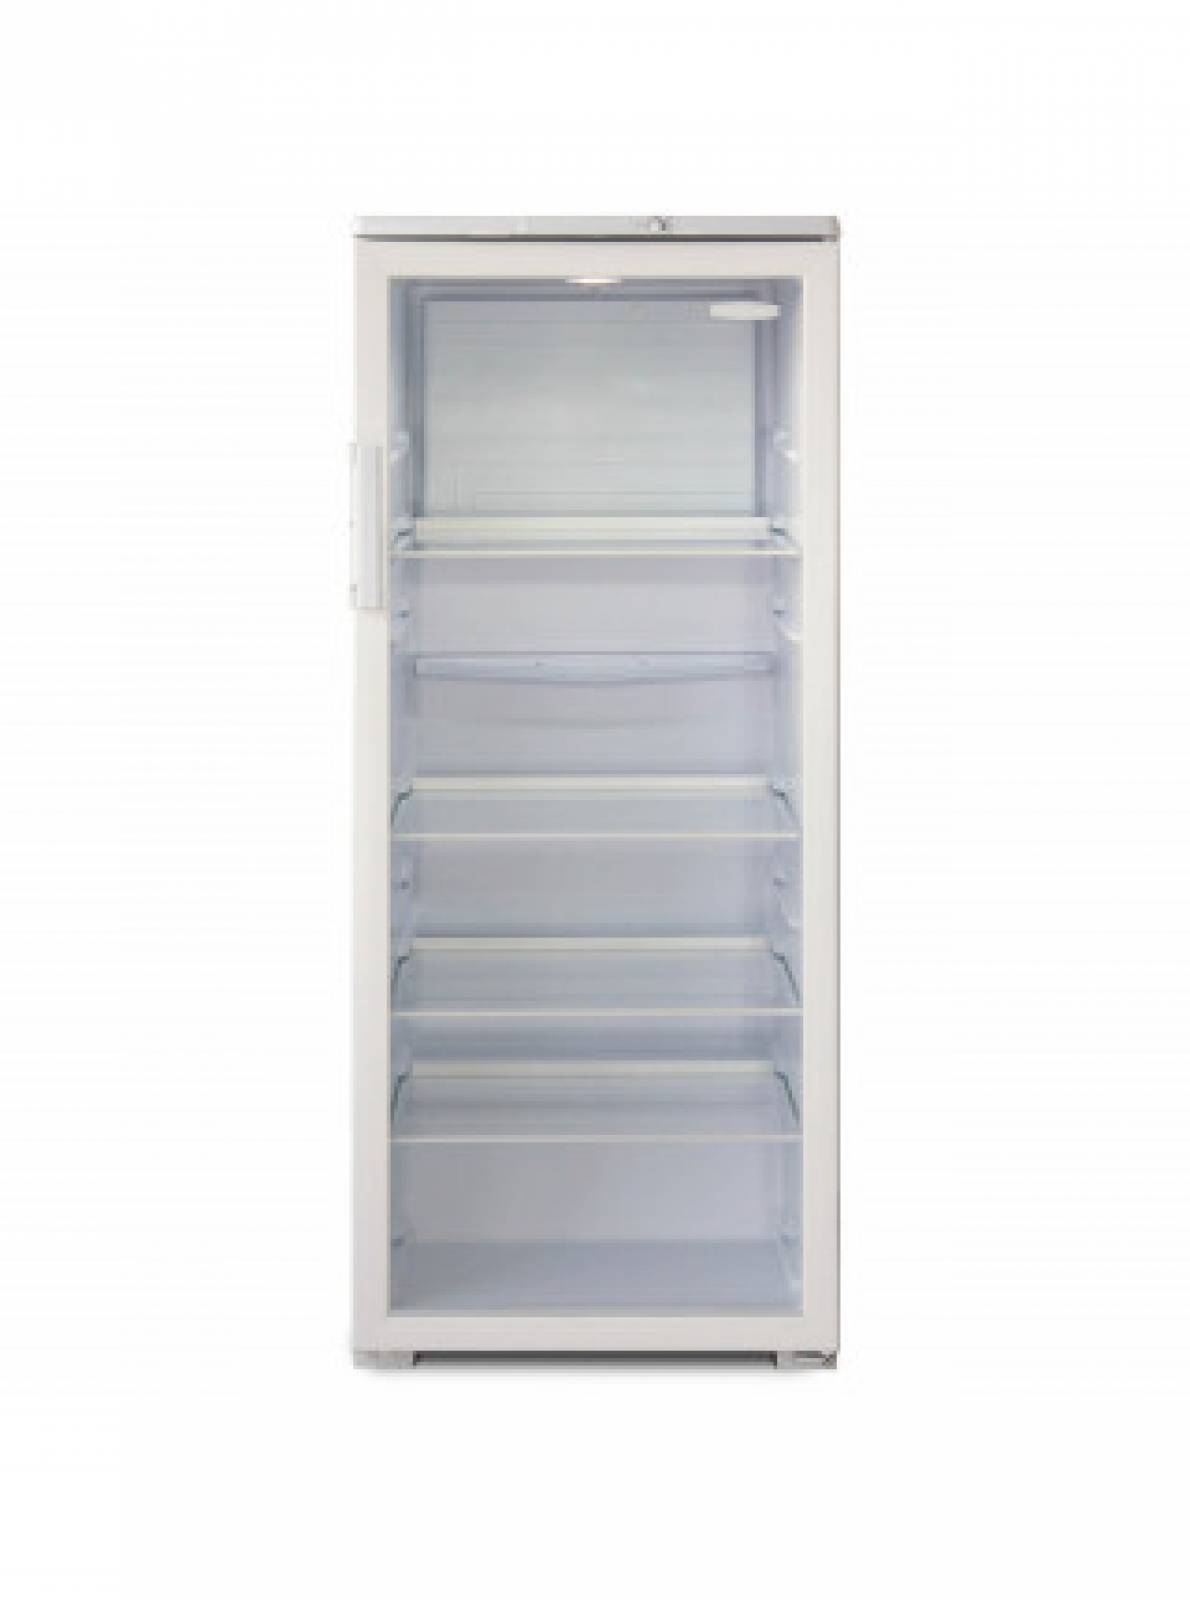 Шкаф витрина бирюса. Холодильник Бирюса 290 витрина. Холодильный шкаф Бирюса 290 белый. Шкаф-витрина Бирюса 290. Холодильная витрина Бирюса 310.